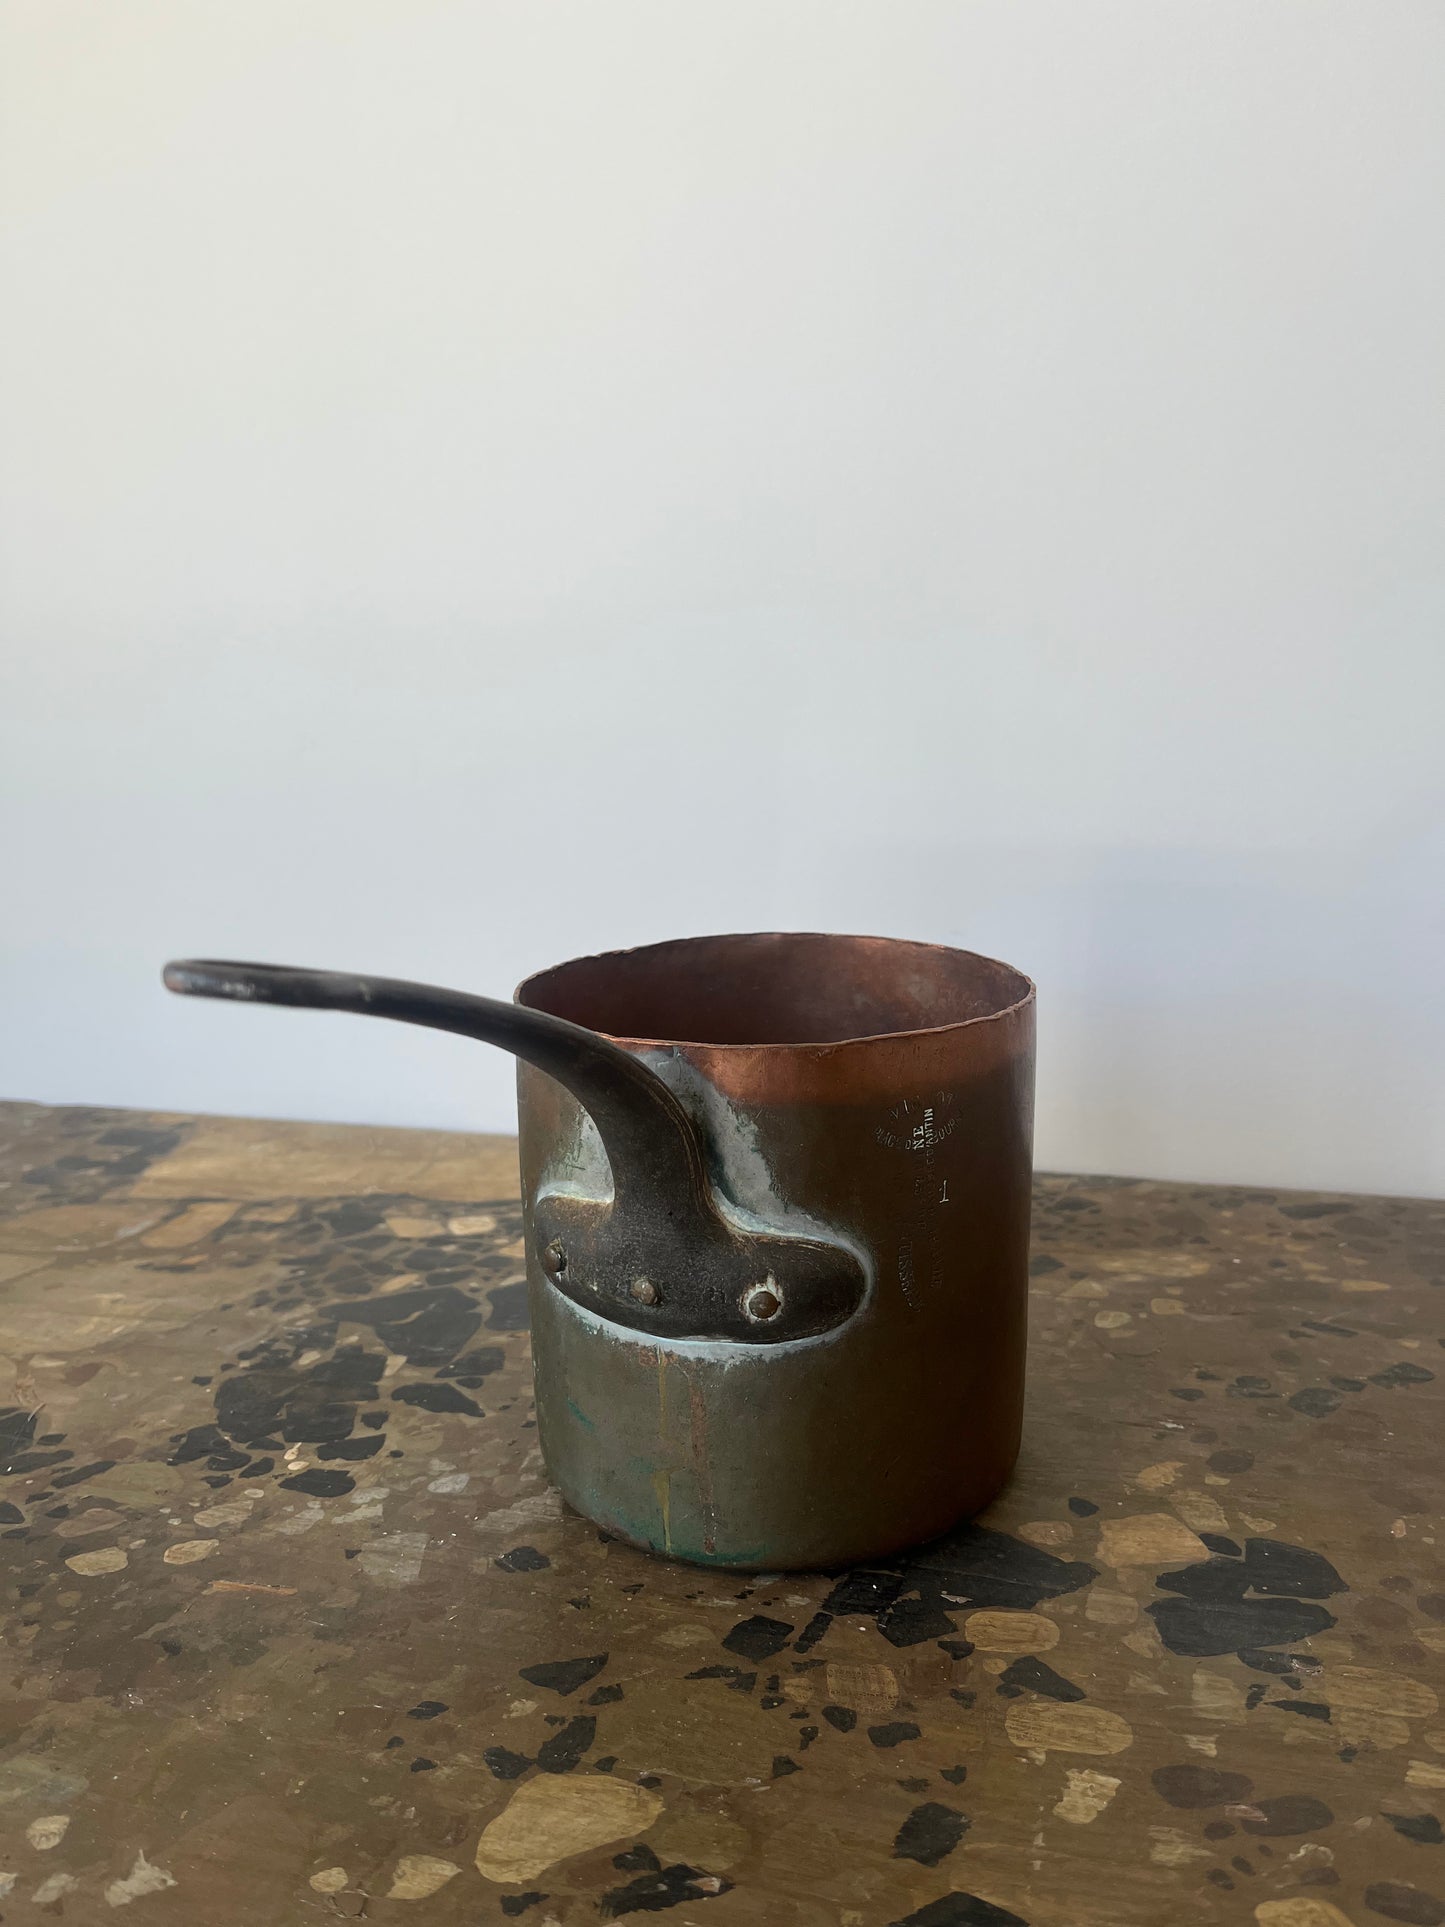 Antique copper pot